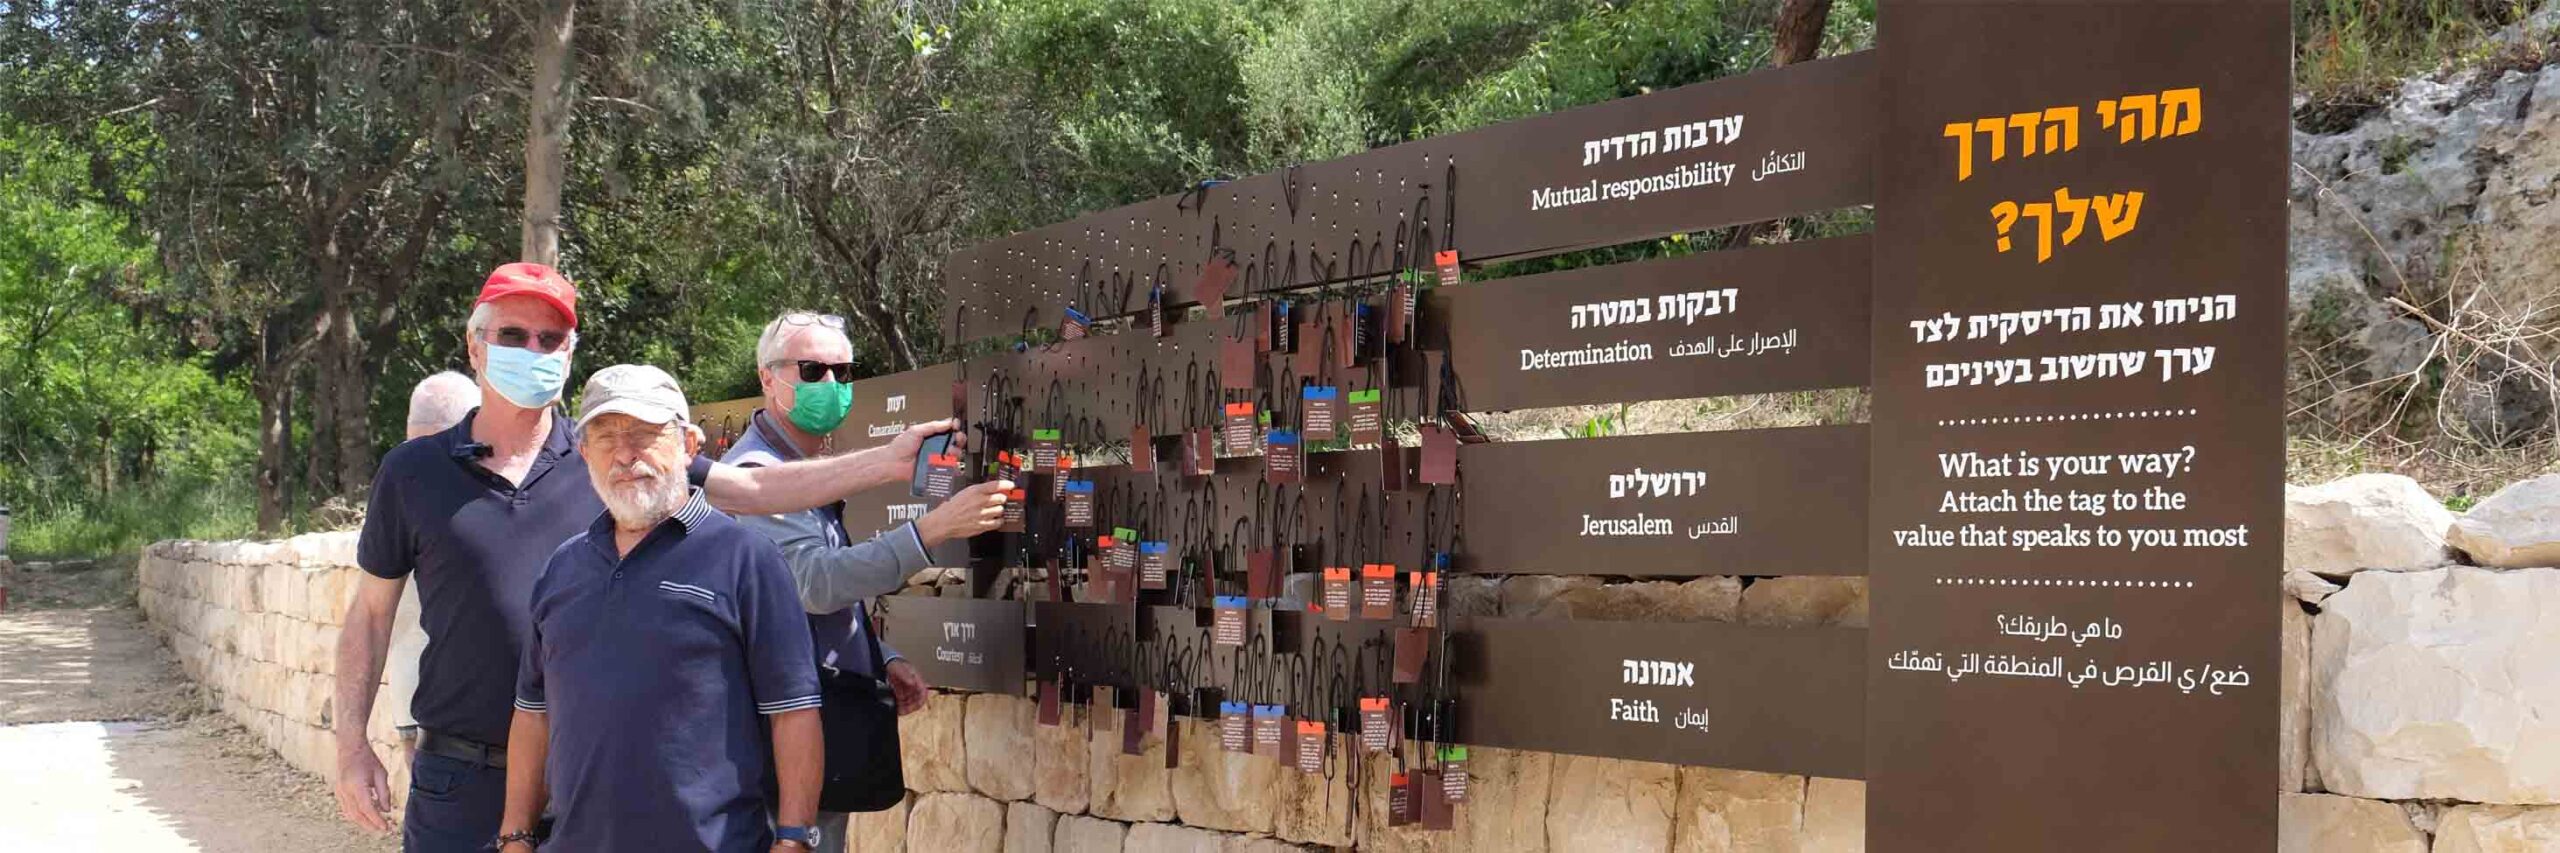 הפעלת 'דירוג ערכים' בגן הלאומי חאן שער הגיא (צילום: דוד טברסקי)